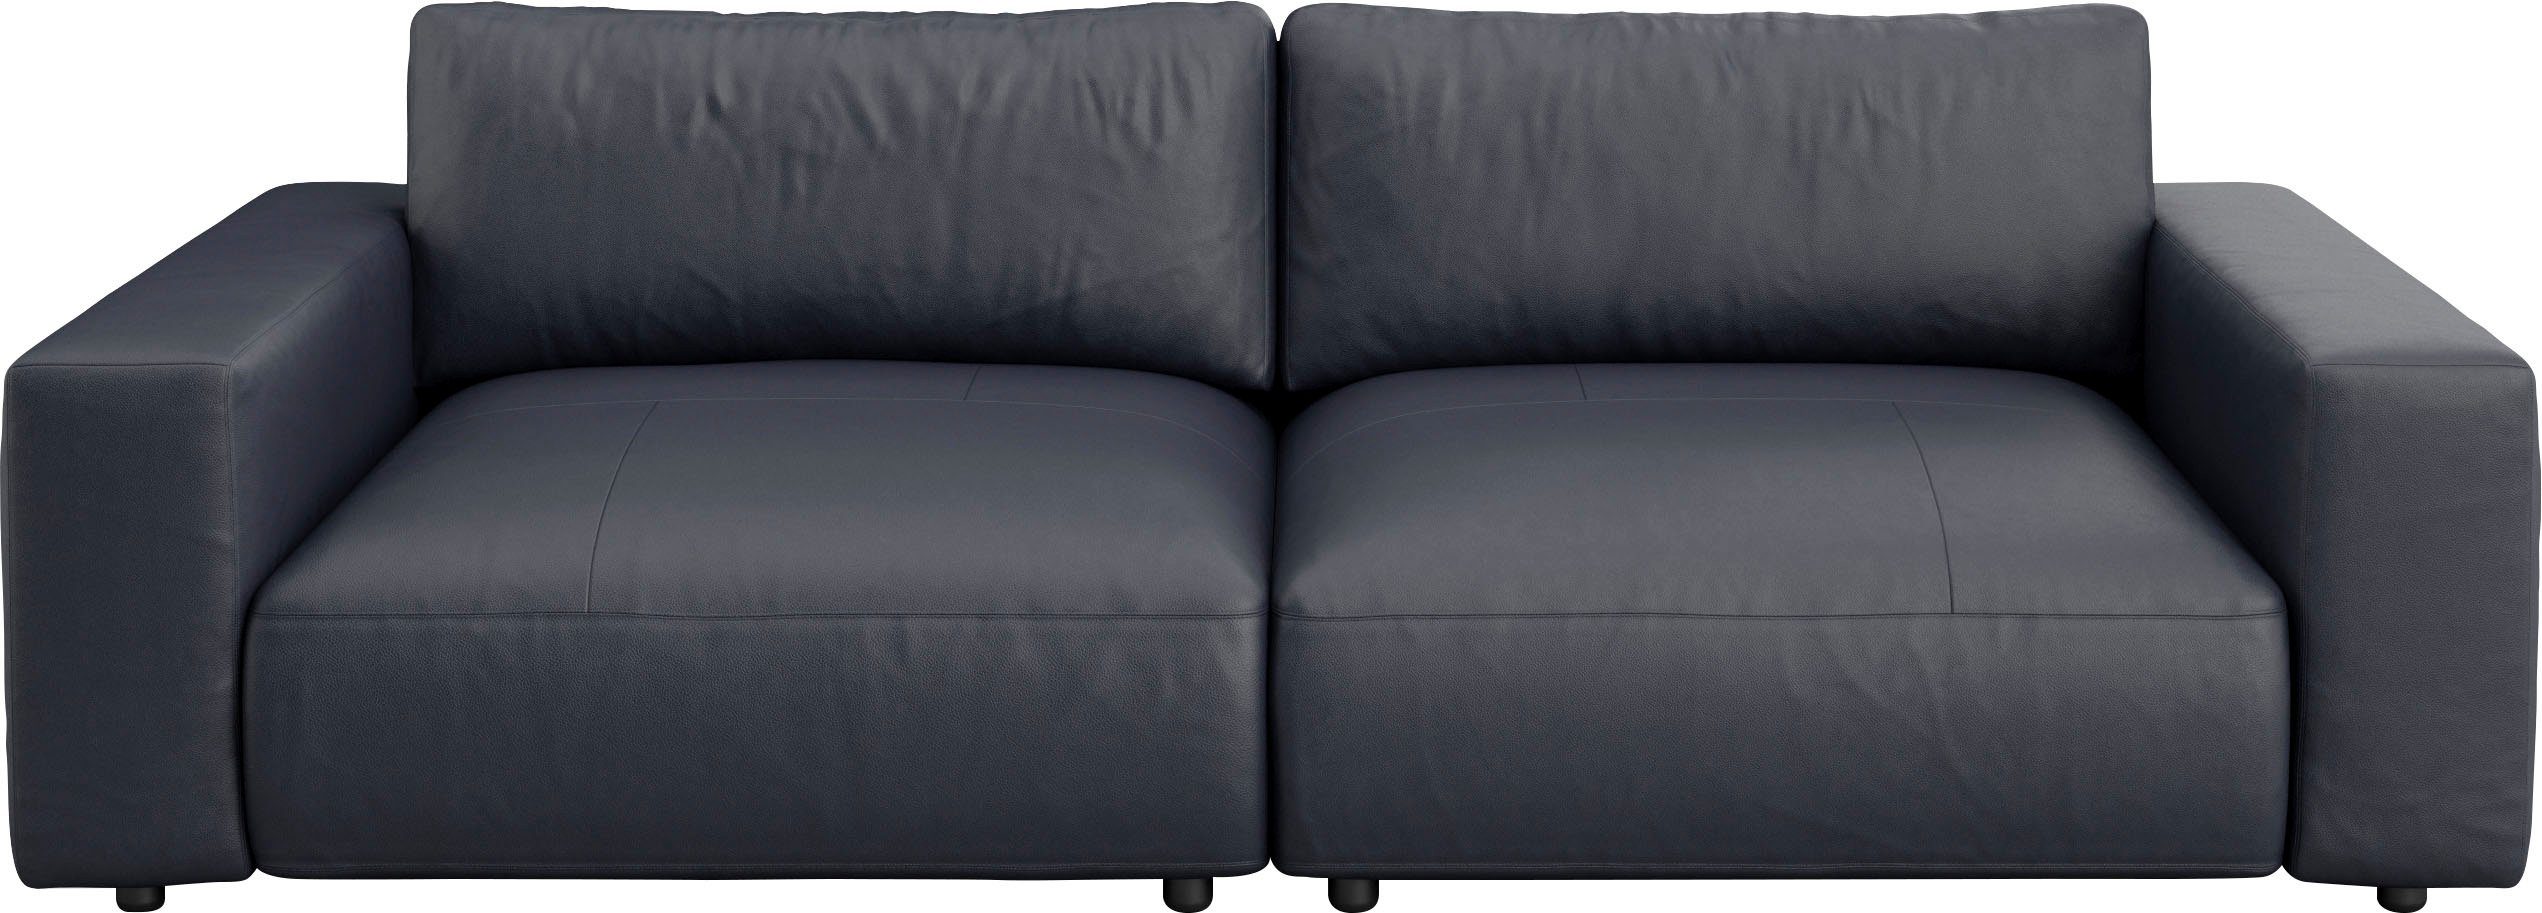 und Big-Sofa by 2,5-Sitzer LUCIA, unterschiedlichen GALLERY Musterring M Qualitäten branded Nähten, 4 in vielen